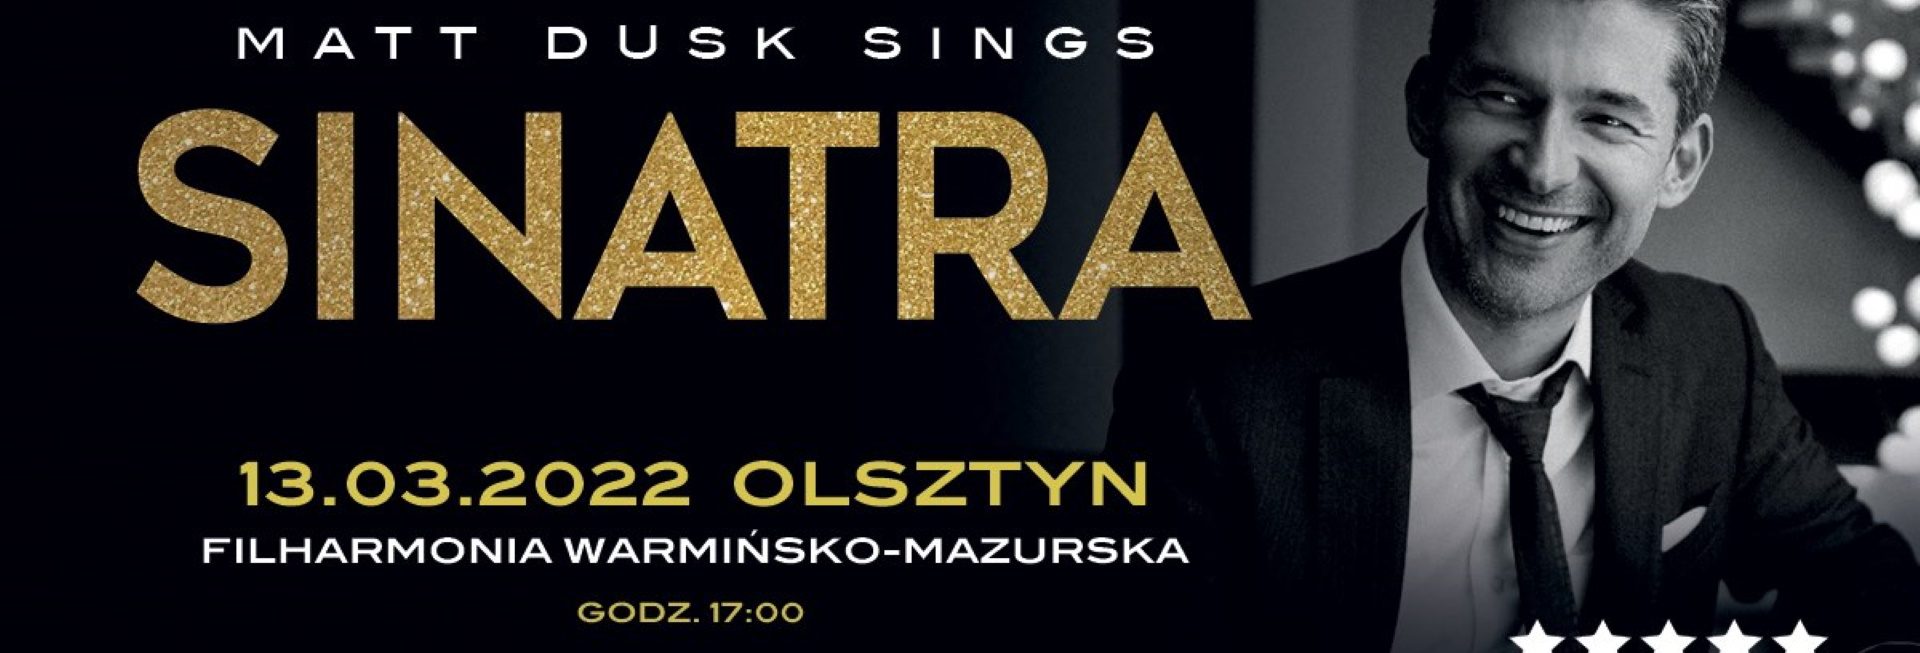 Plakat graficzny zapraszający do Olsztyna na koncert Matt Dusk Sings SINATRA - Filharmonia Olsztyn. 